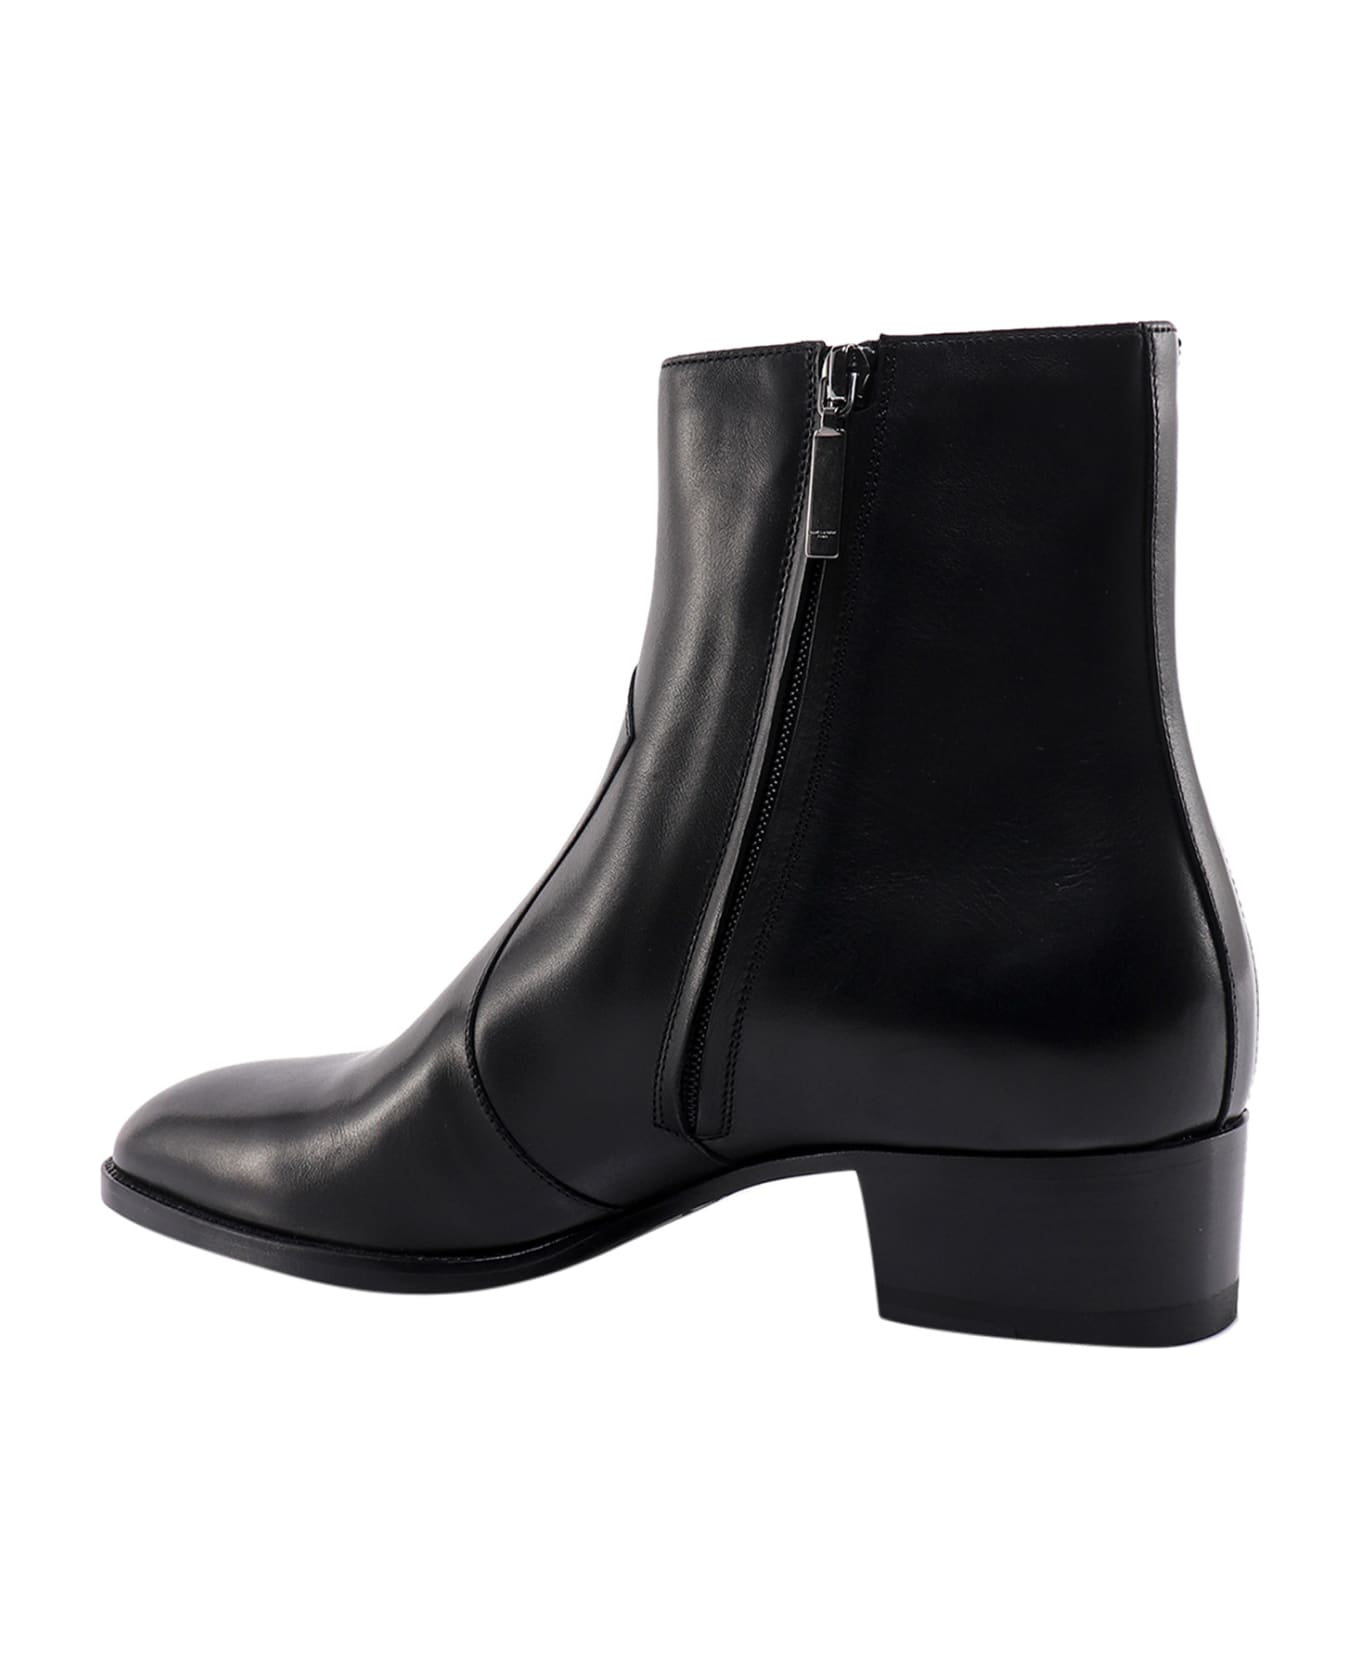 Saint Laurent Ankle Boots - NERO